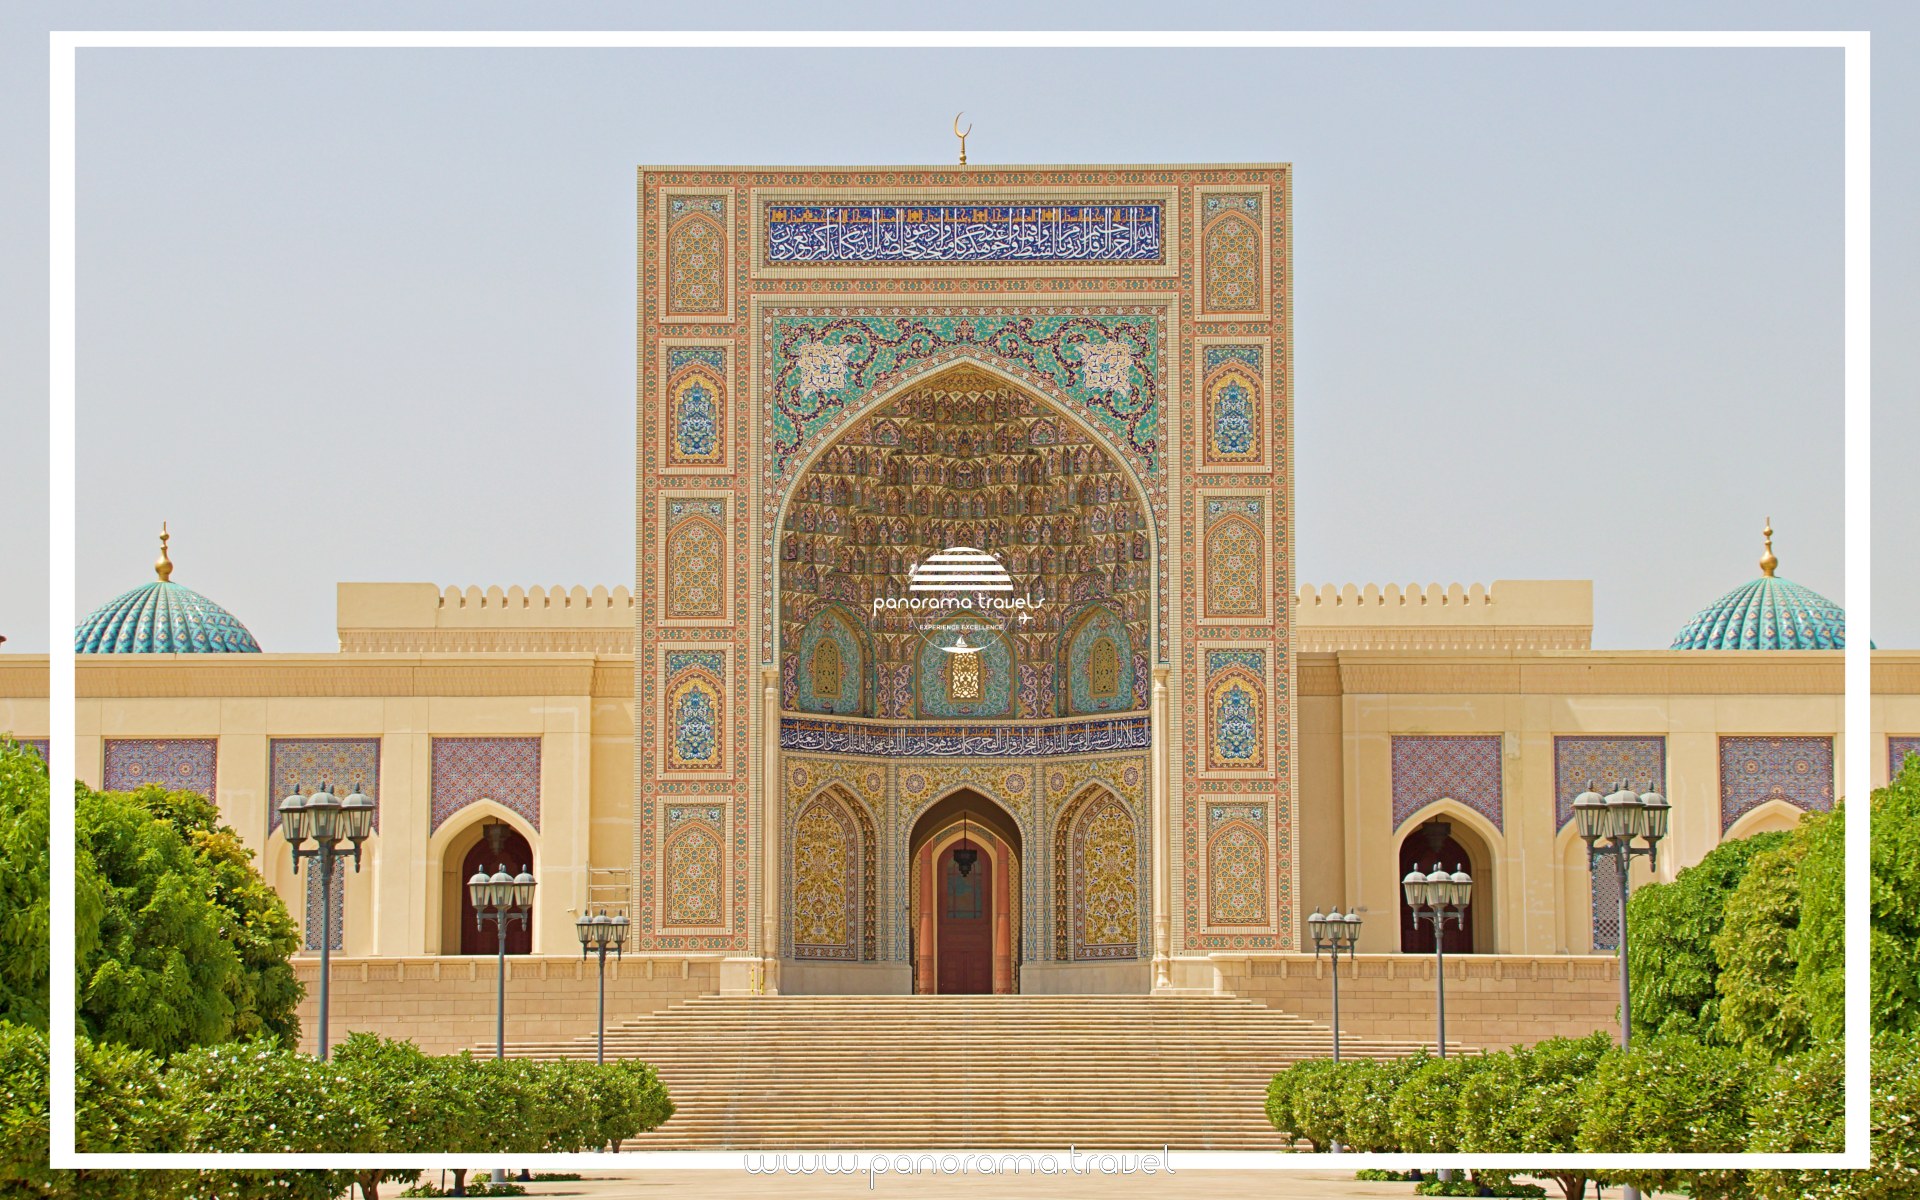 Sultan Qaboos Mosque at Sohar